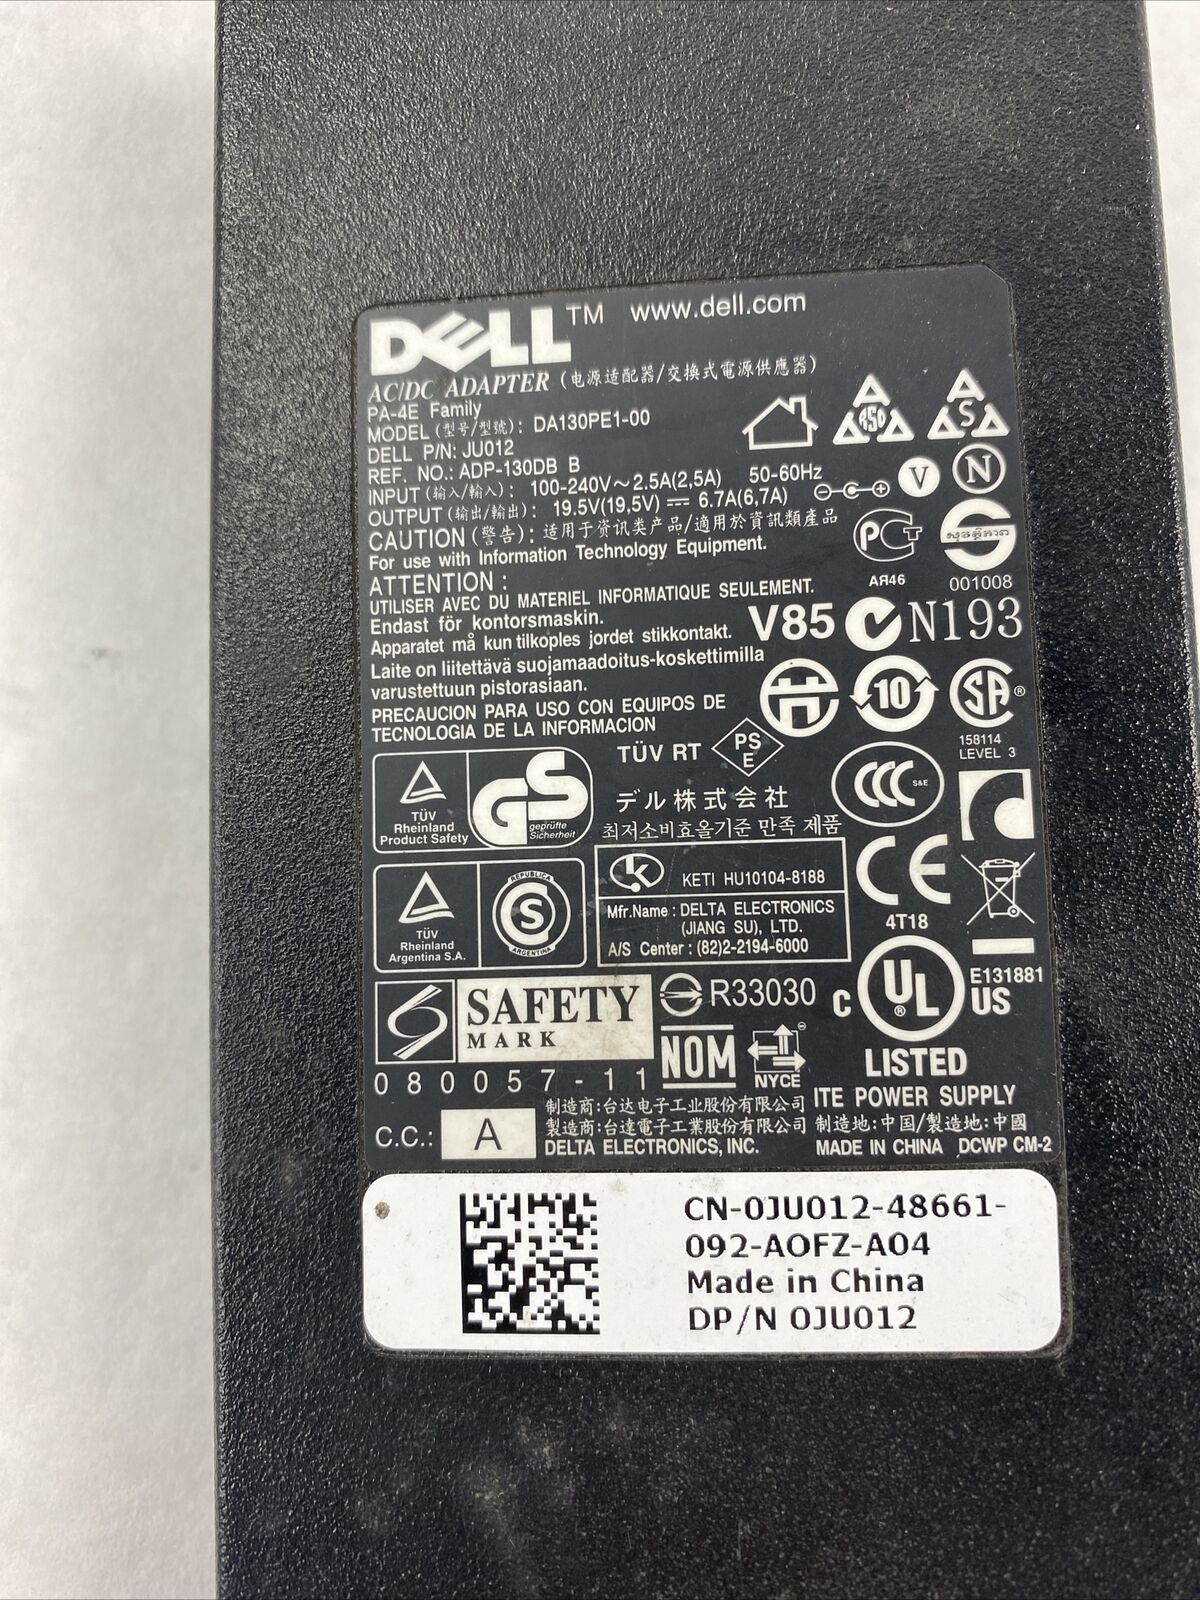 Dell JU012 AC Adapter Charger DA130PE1-00 19.5V